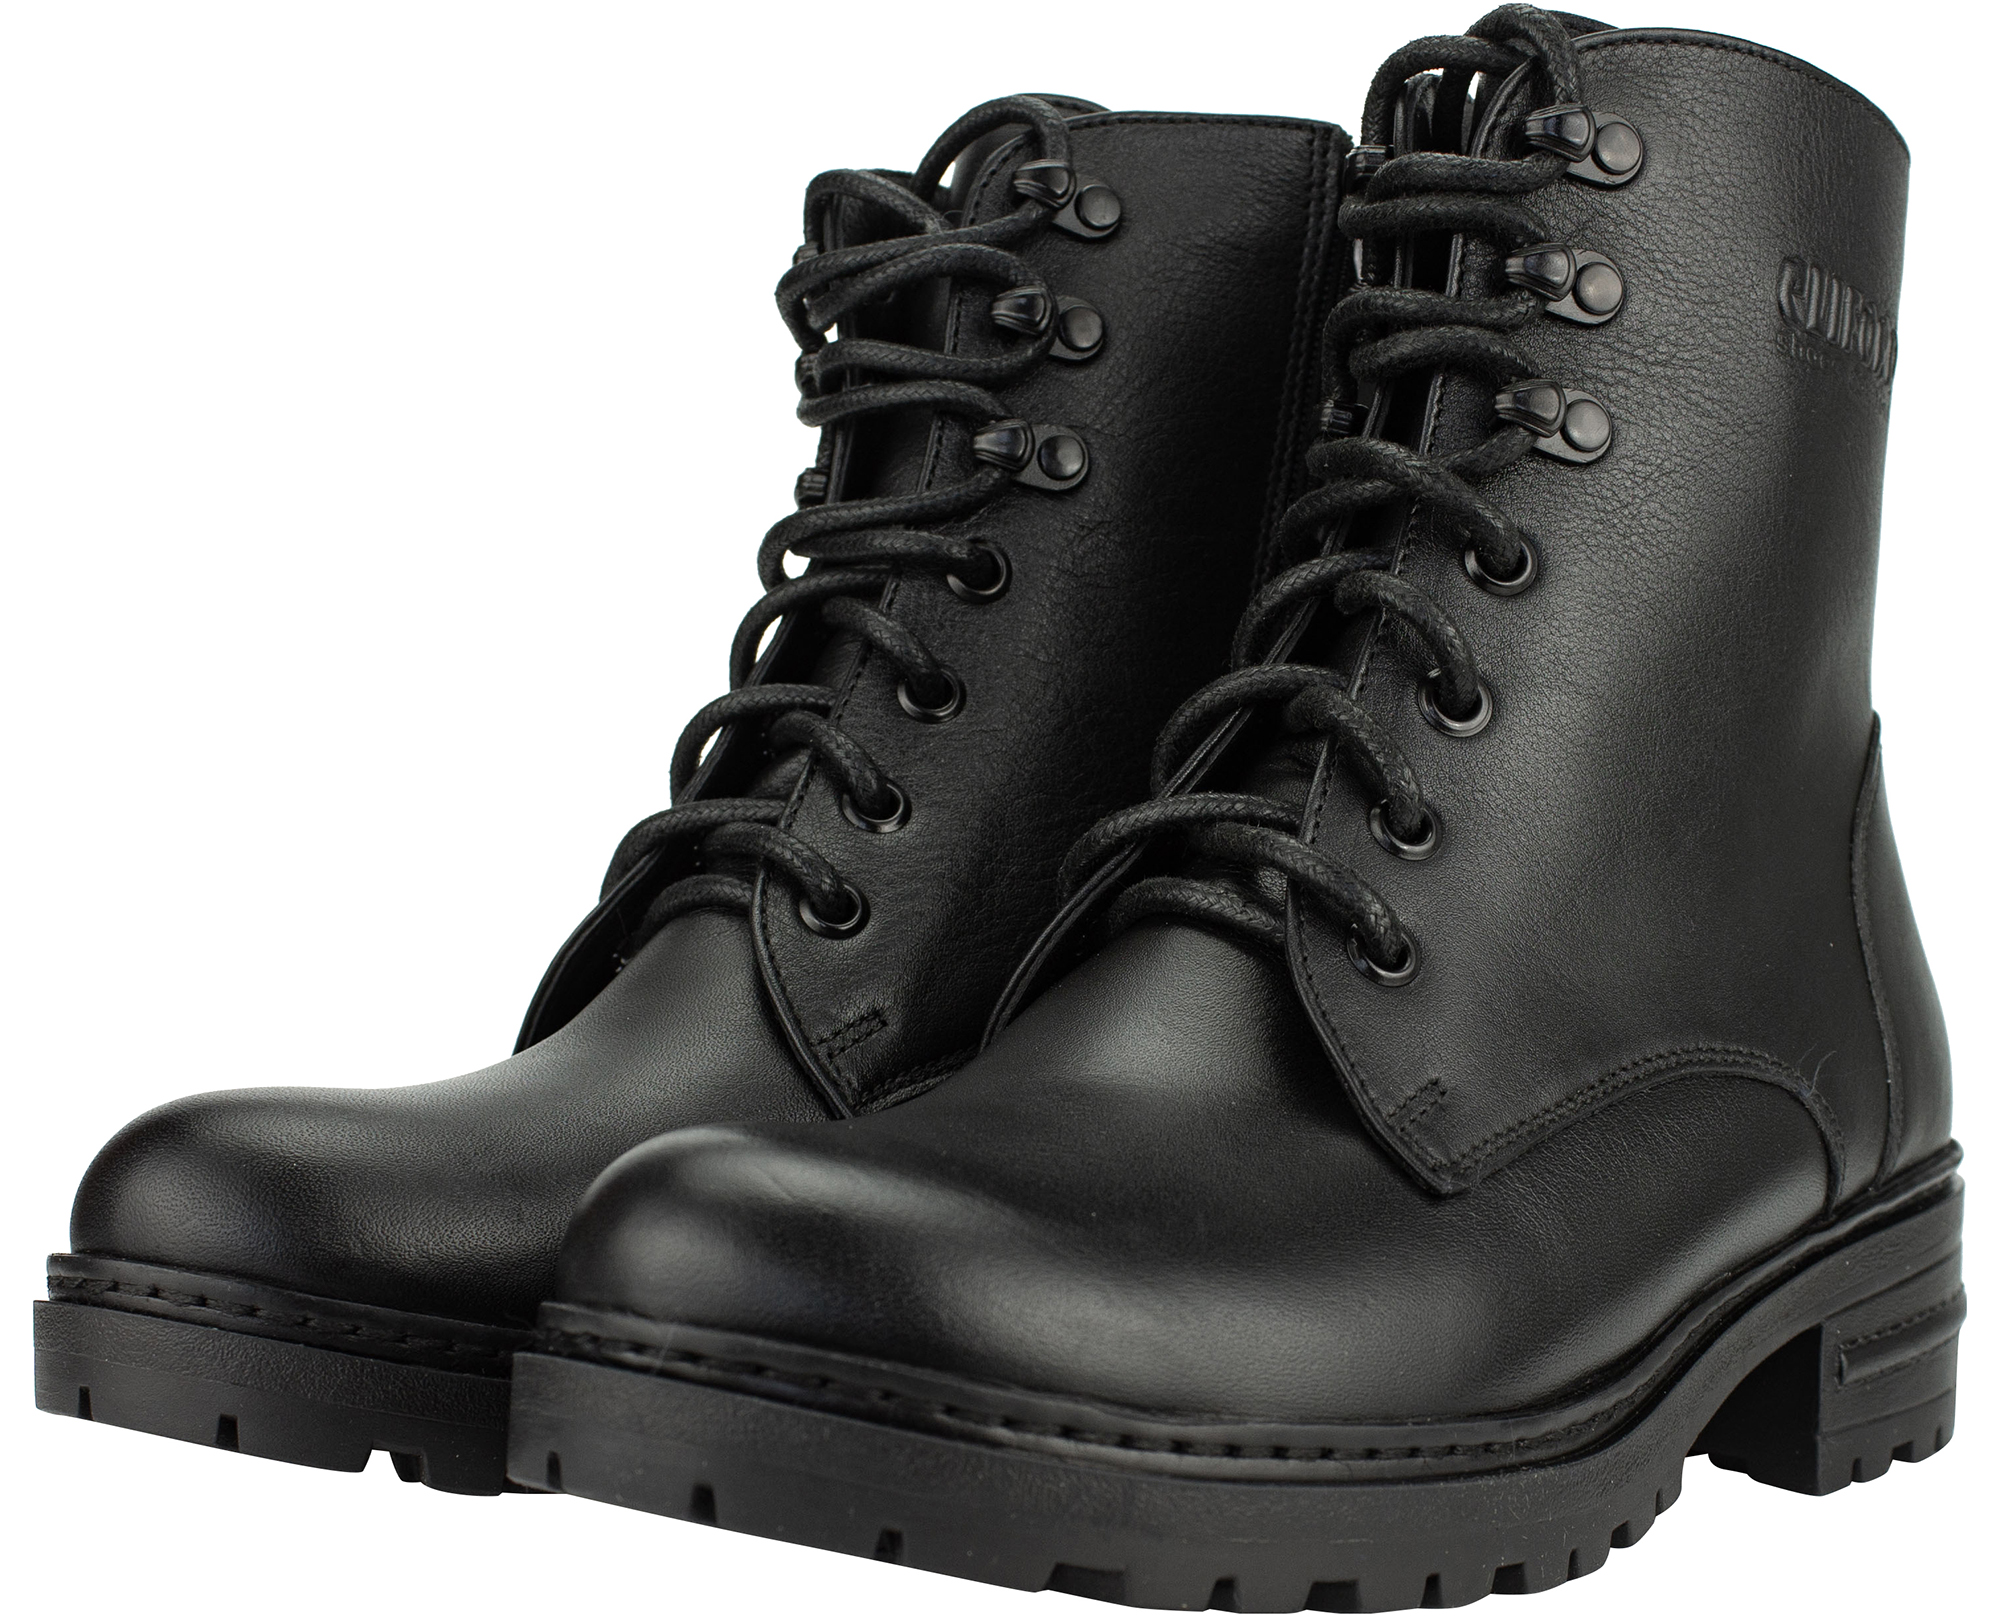 

Ботинки Cliford чёрные натуральная кожа производство Украина 116-01brookKBL - размер 37 (24 см)